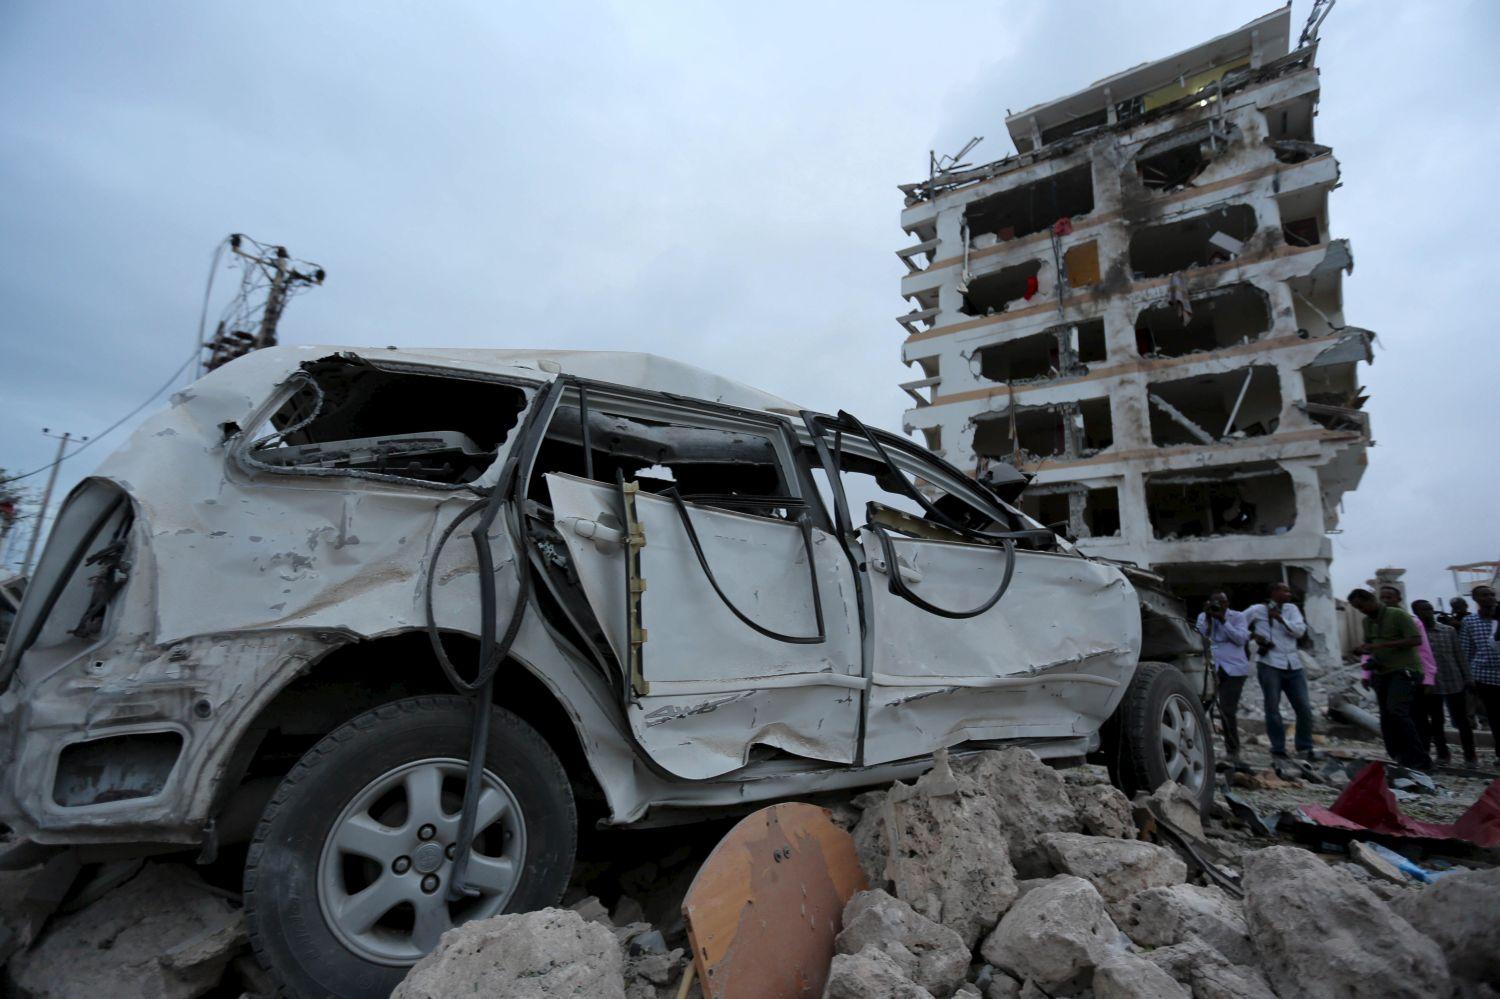 A Jazeera hotel környékén is hatalmas volt a pusztítás, a szemtanúk szerint emberi végtagok hevertek mindenütt